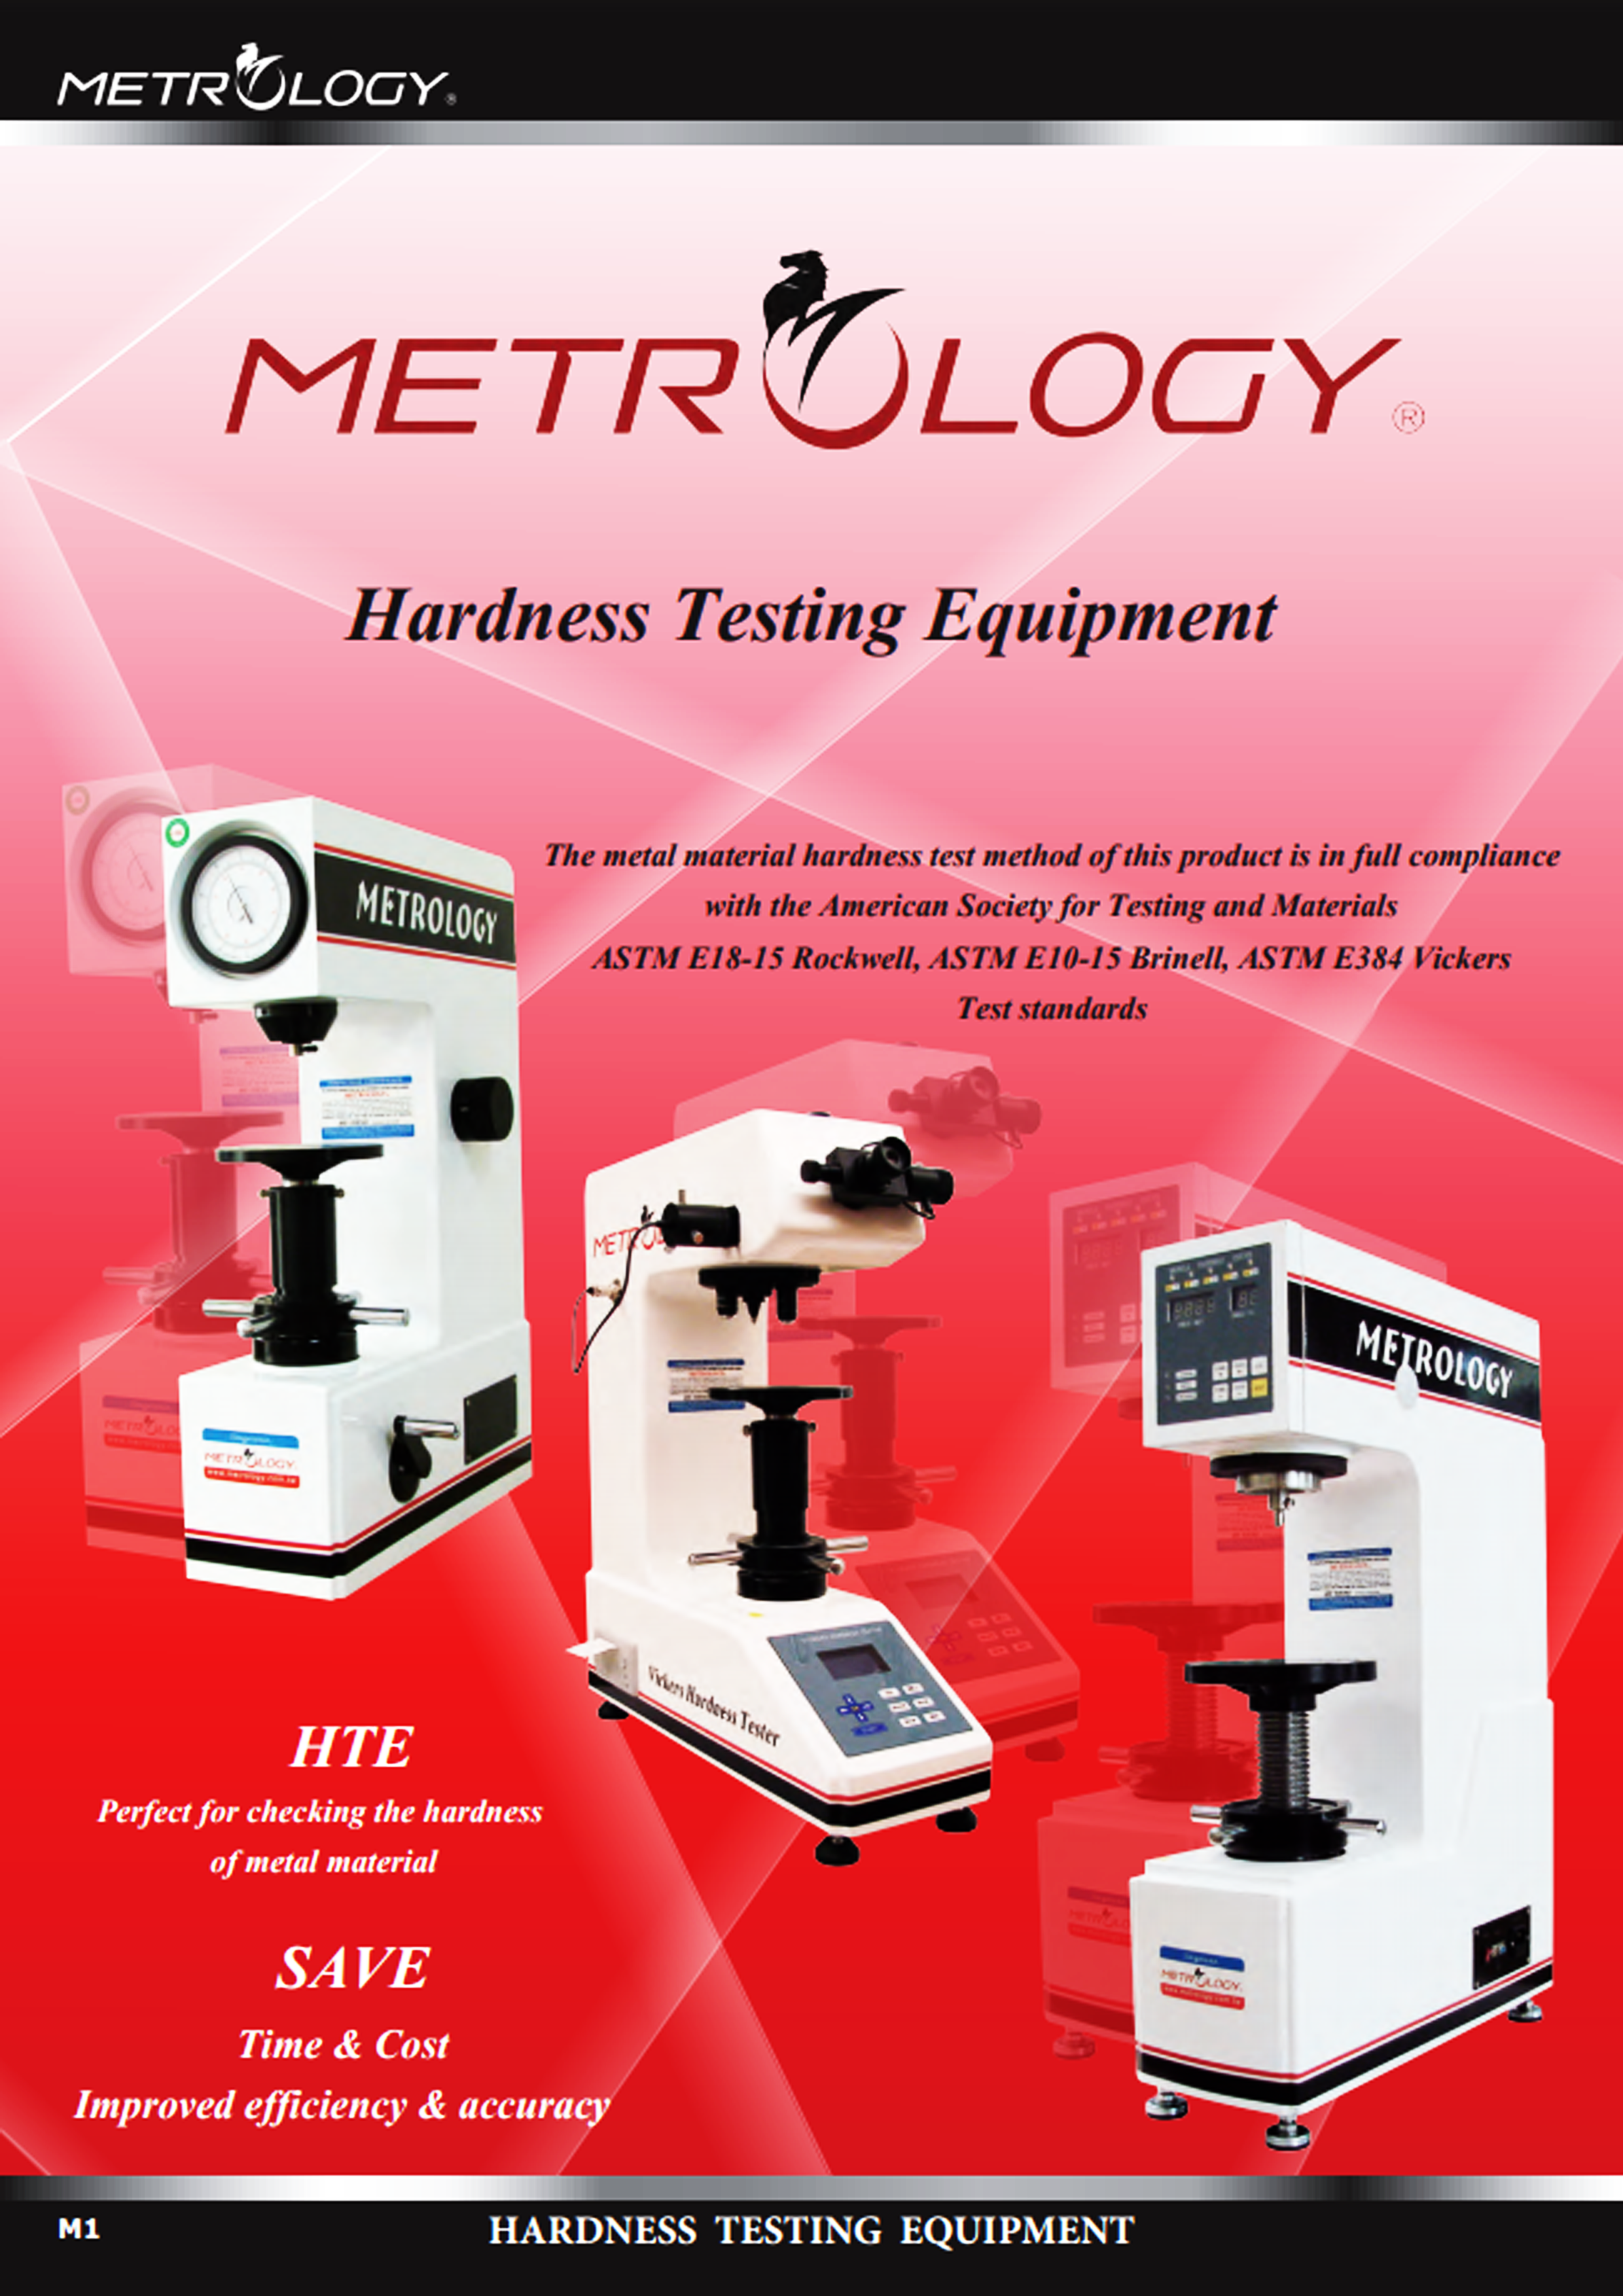 เครื่องทดสอบความแข็ง แบบแมนวลและอัตโนมัติ (Hardness Testing Equipment) ยี่ห้อ Metrology